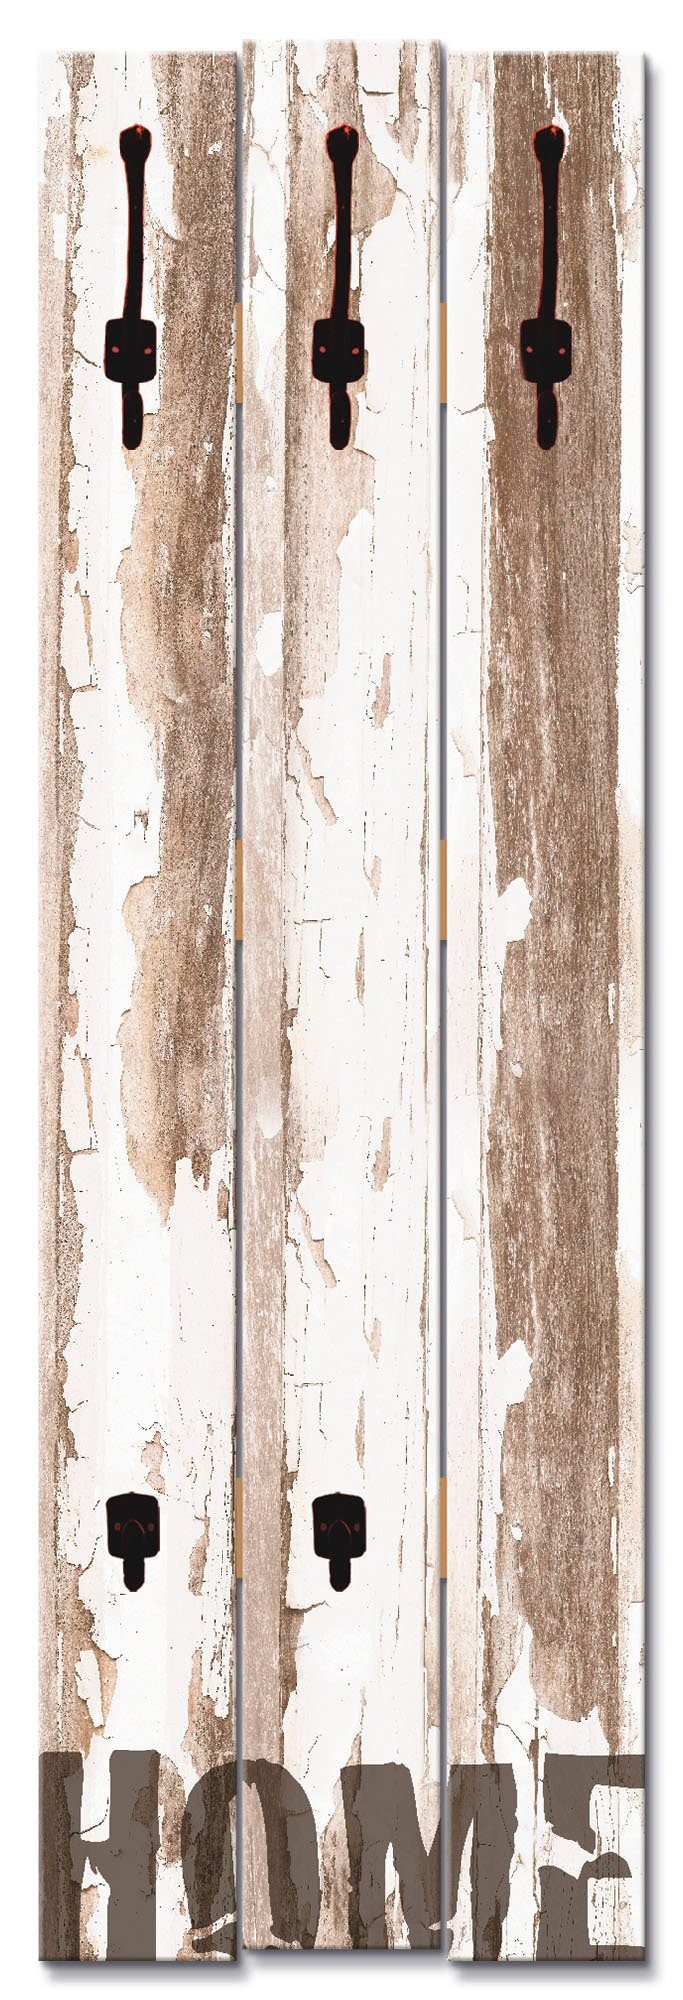 Artland Kapstokpaneel Home ruimtebesparende kapstok van hout met 5 haken, geschikt voor kleine, smalle hal, halkapstok